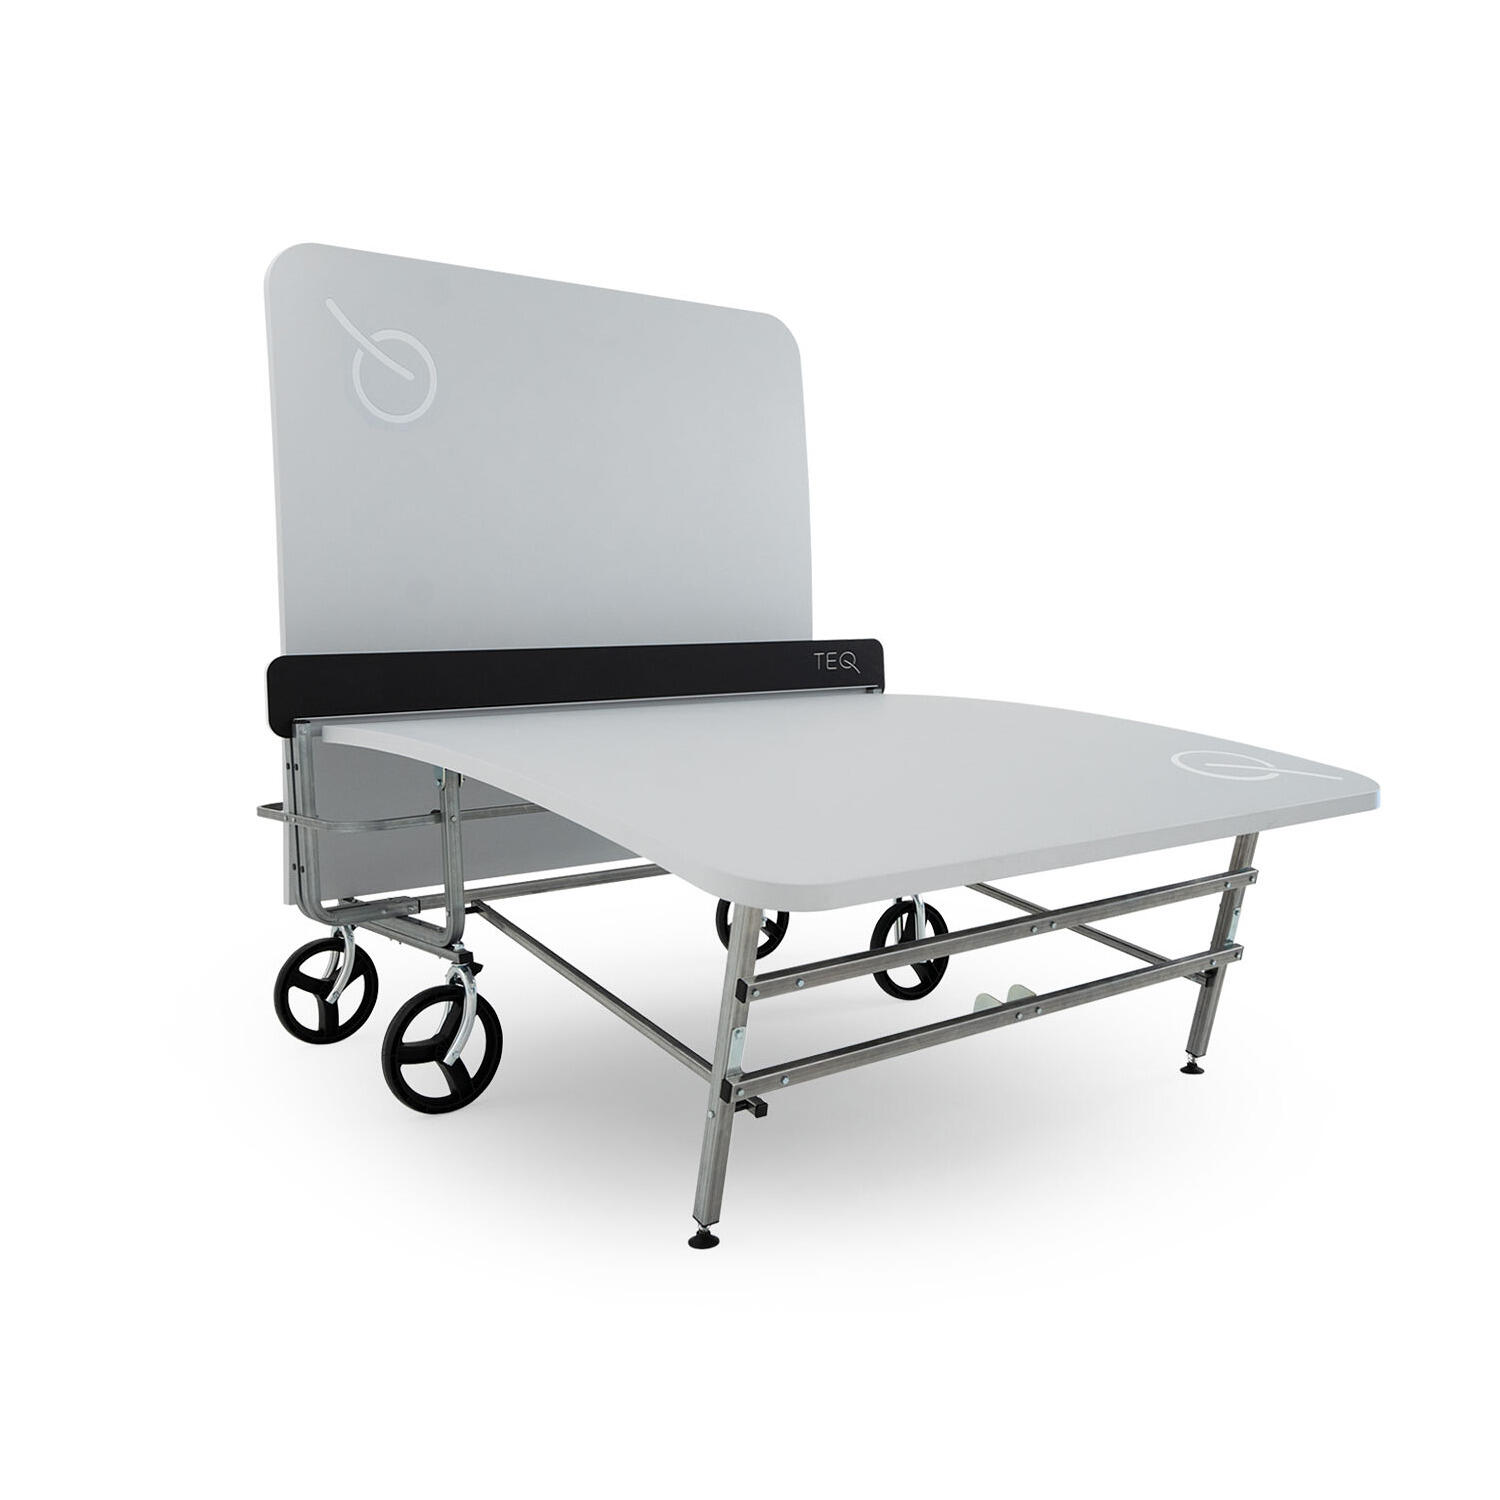 TEQ™ LITE Table - Multifunctional sports equipment - Outdoor / Indoor 6/6